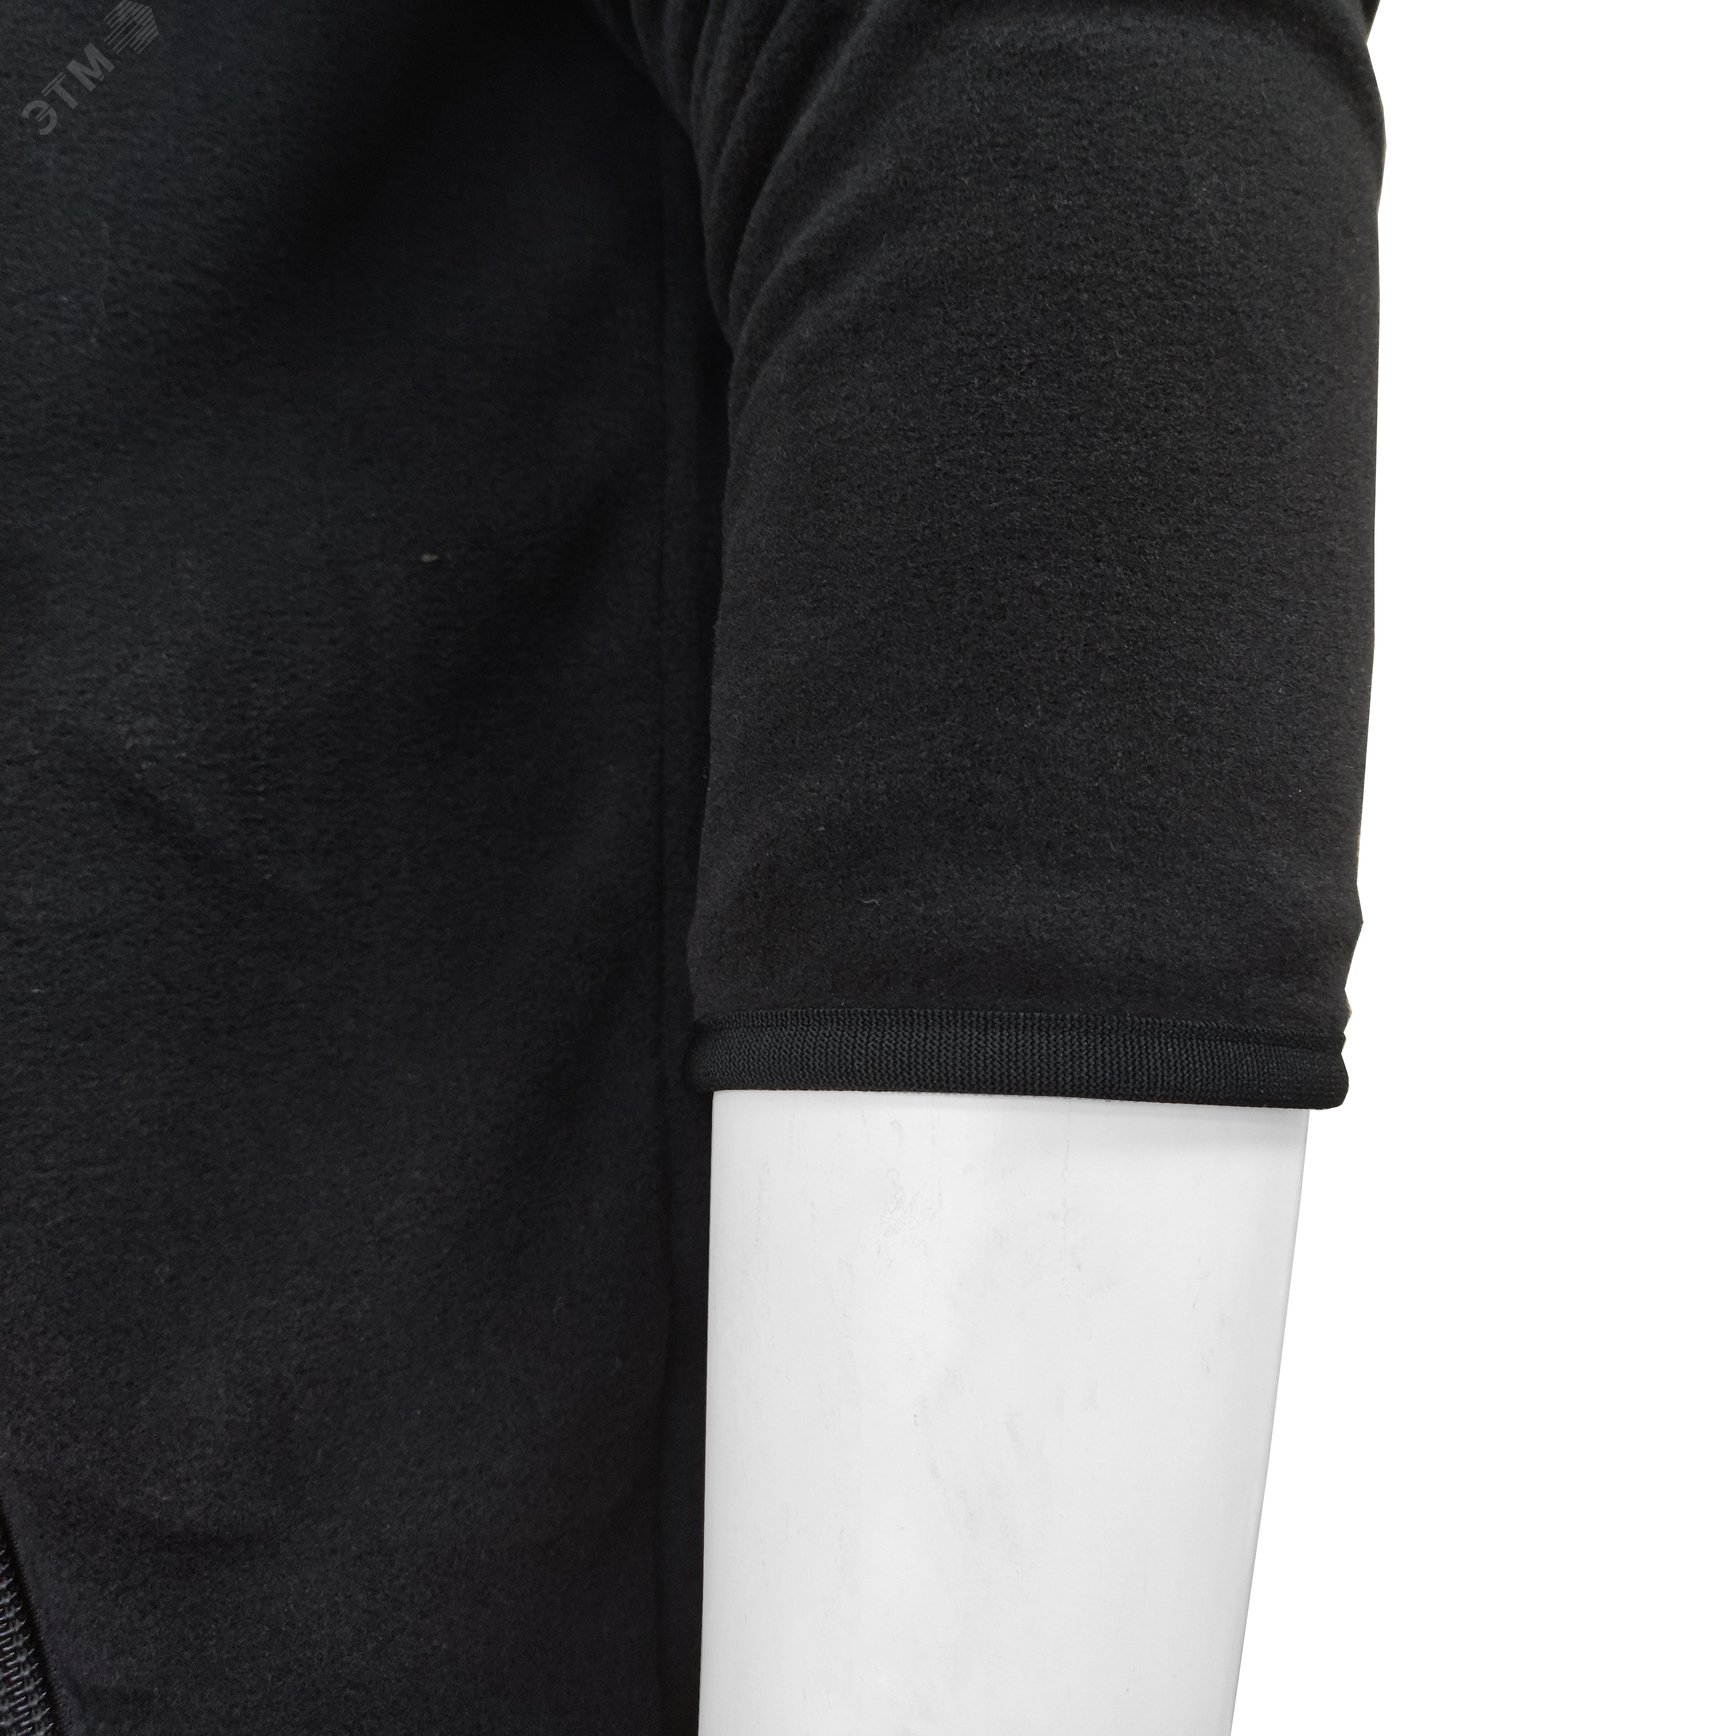 Куртка флисовая арт. JF-01 на молнии цв. чёрный 48-50 р. М 142300 Эталон-Спецодежда - превью 10